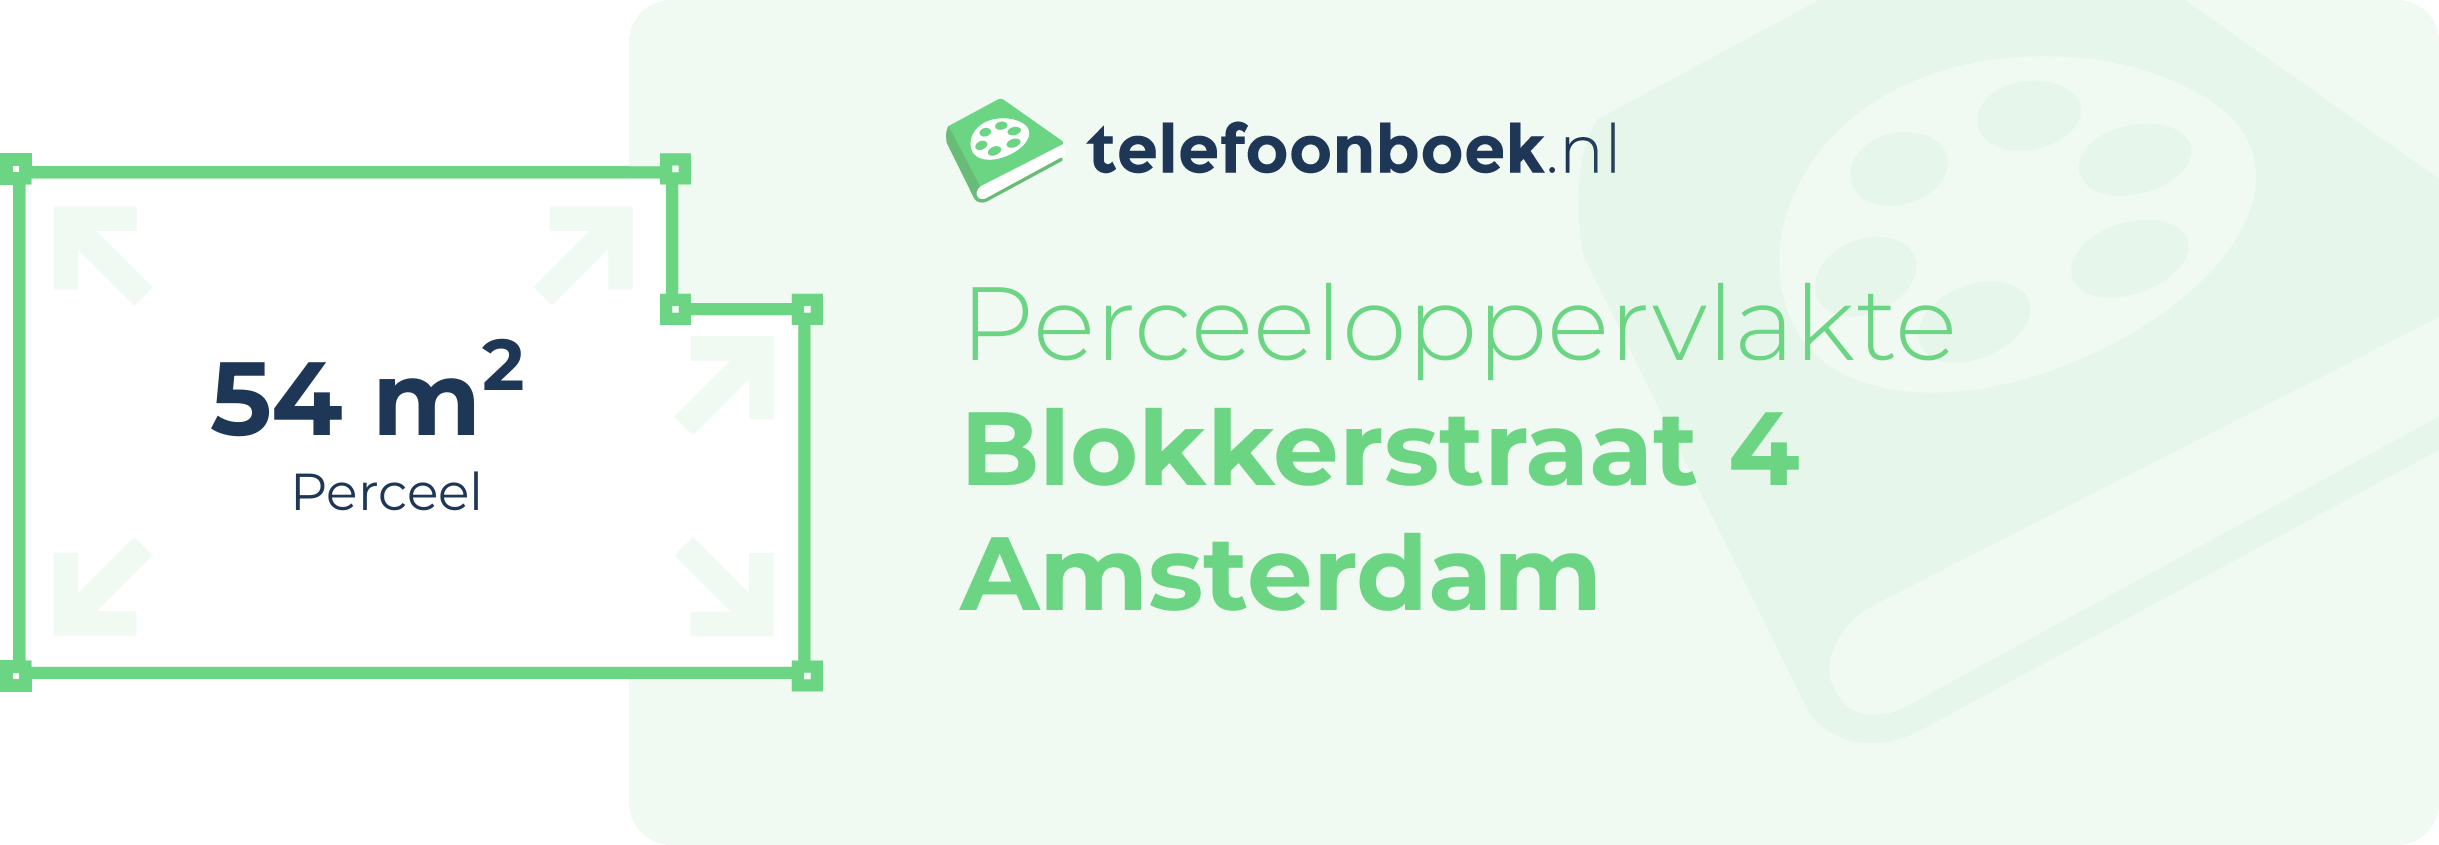 Perceeloppervlakte Blokkerstraat 4 Amsterdam